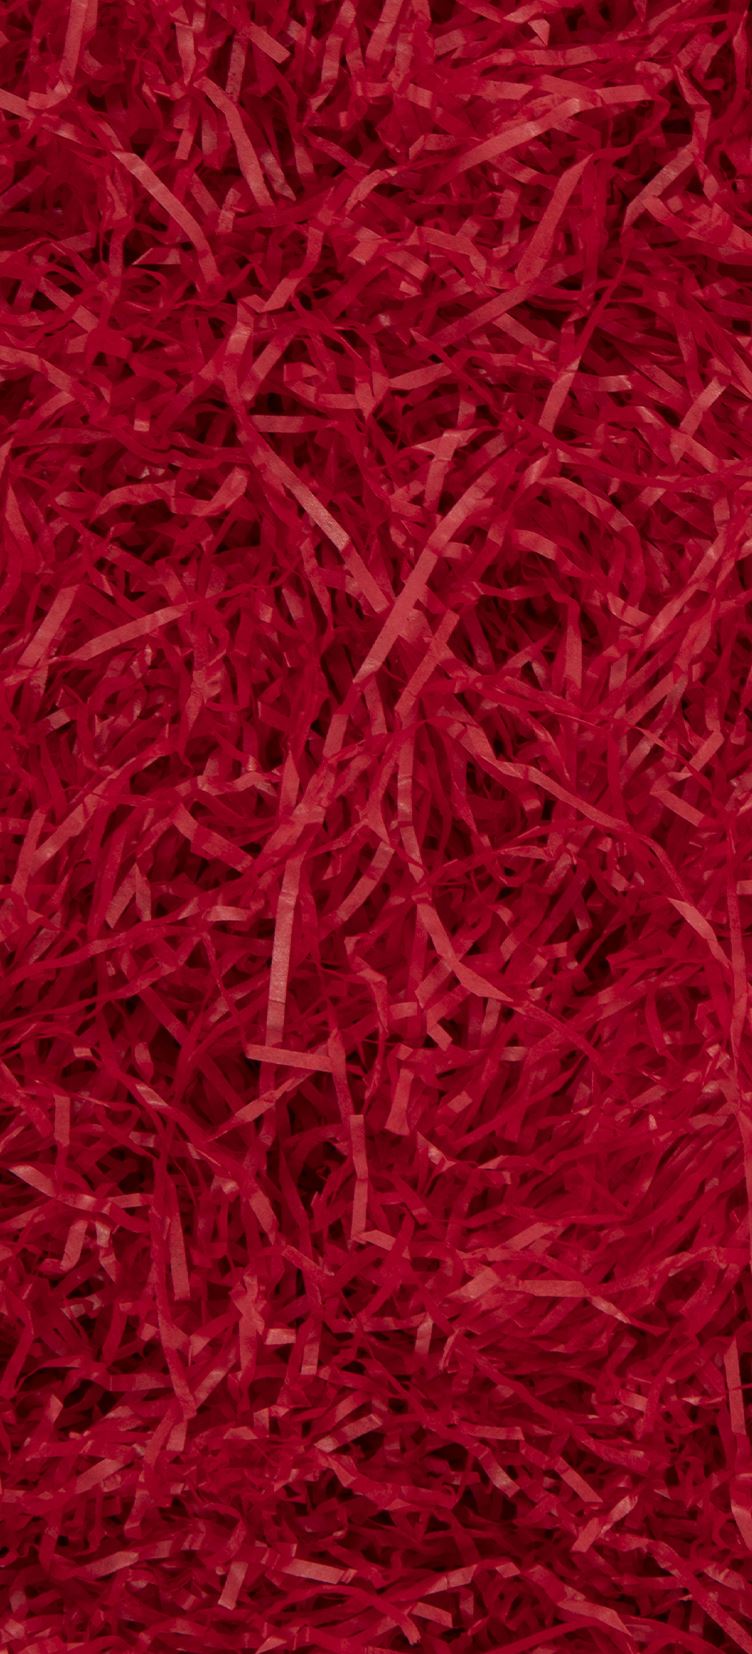 Shredded Tissue Paper - Red